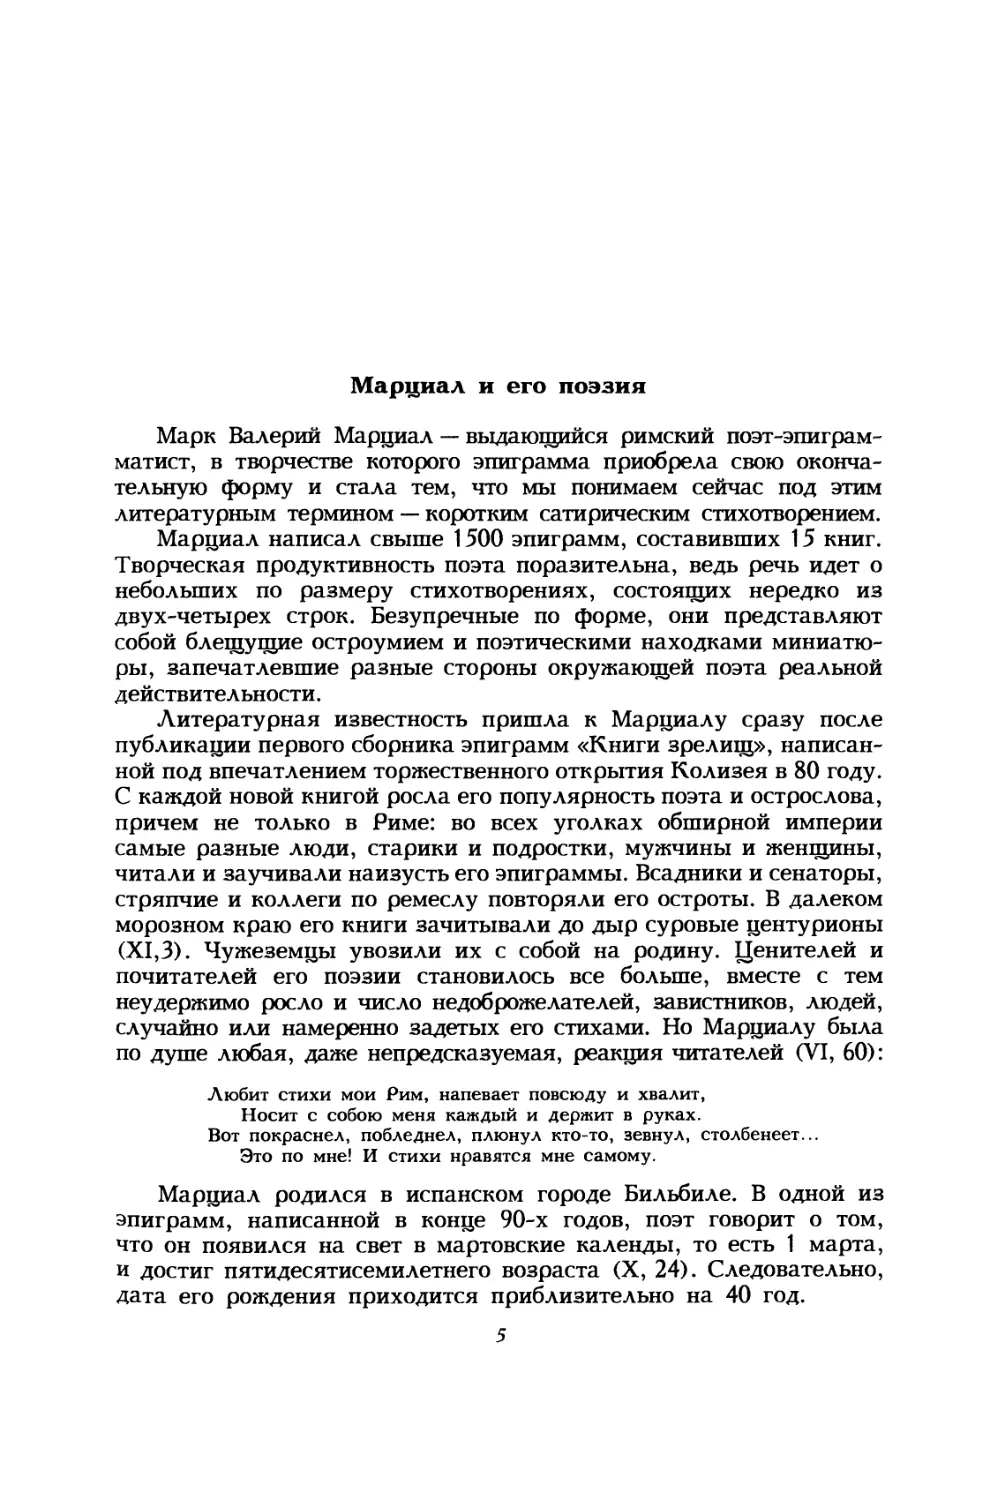 В. С. Дуров. Марциал и его поэзия